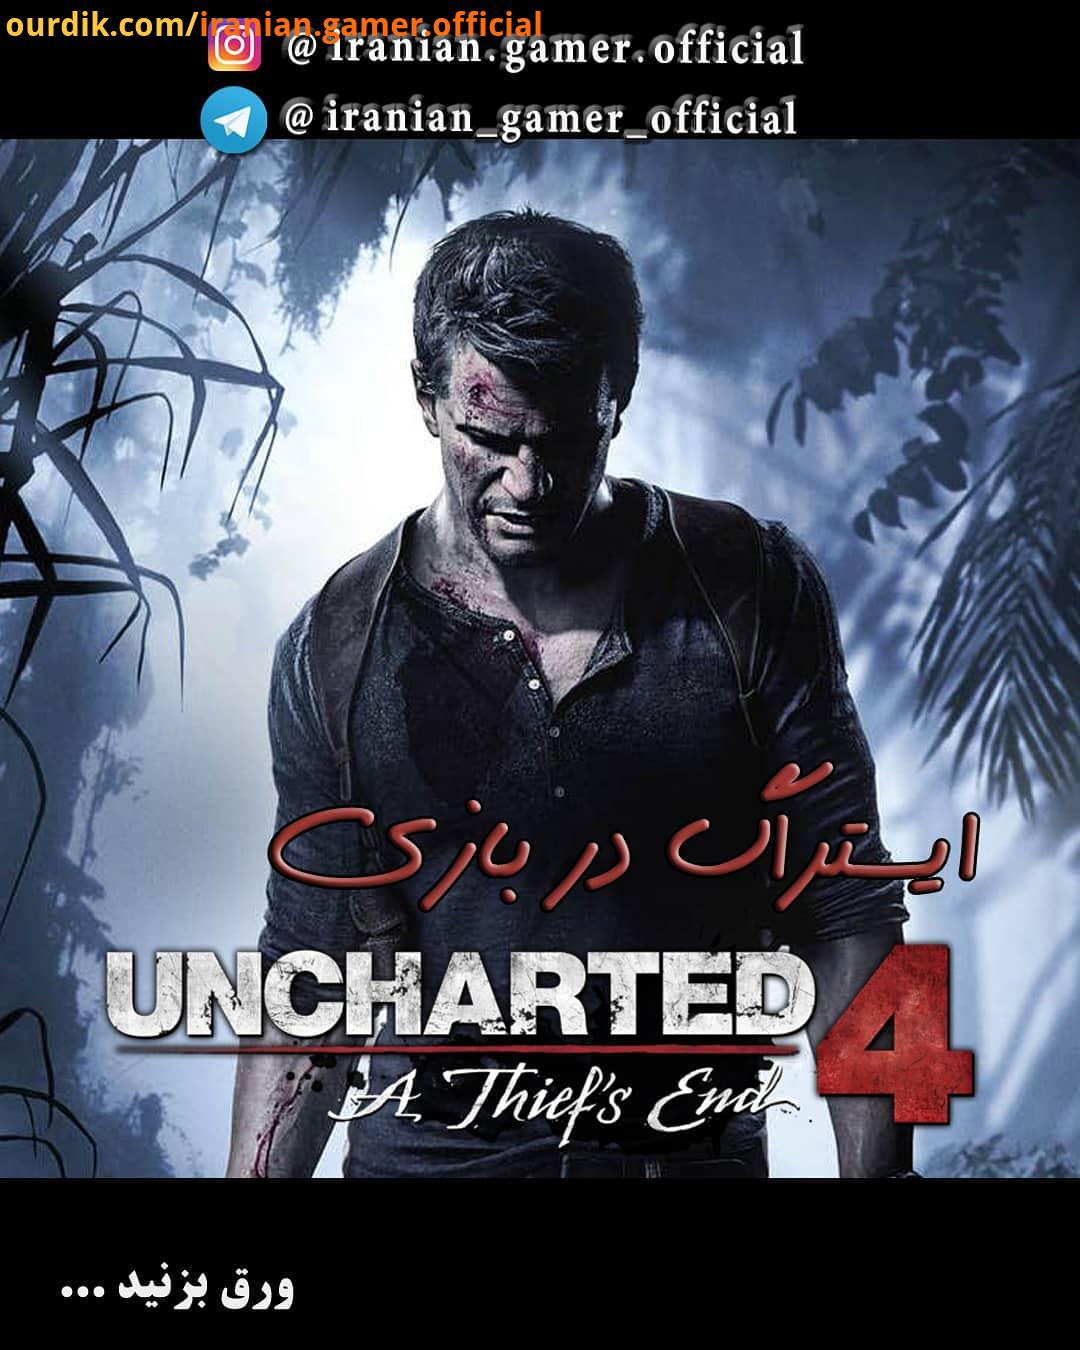 ایستراگ رفرنس در بازی Uncharted : Thief End عنوان آنچارتد یک بازی ویدیویی از مجموعه بازی های